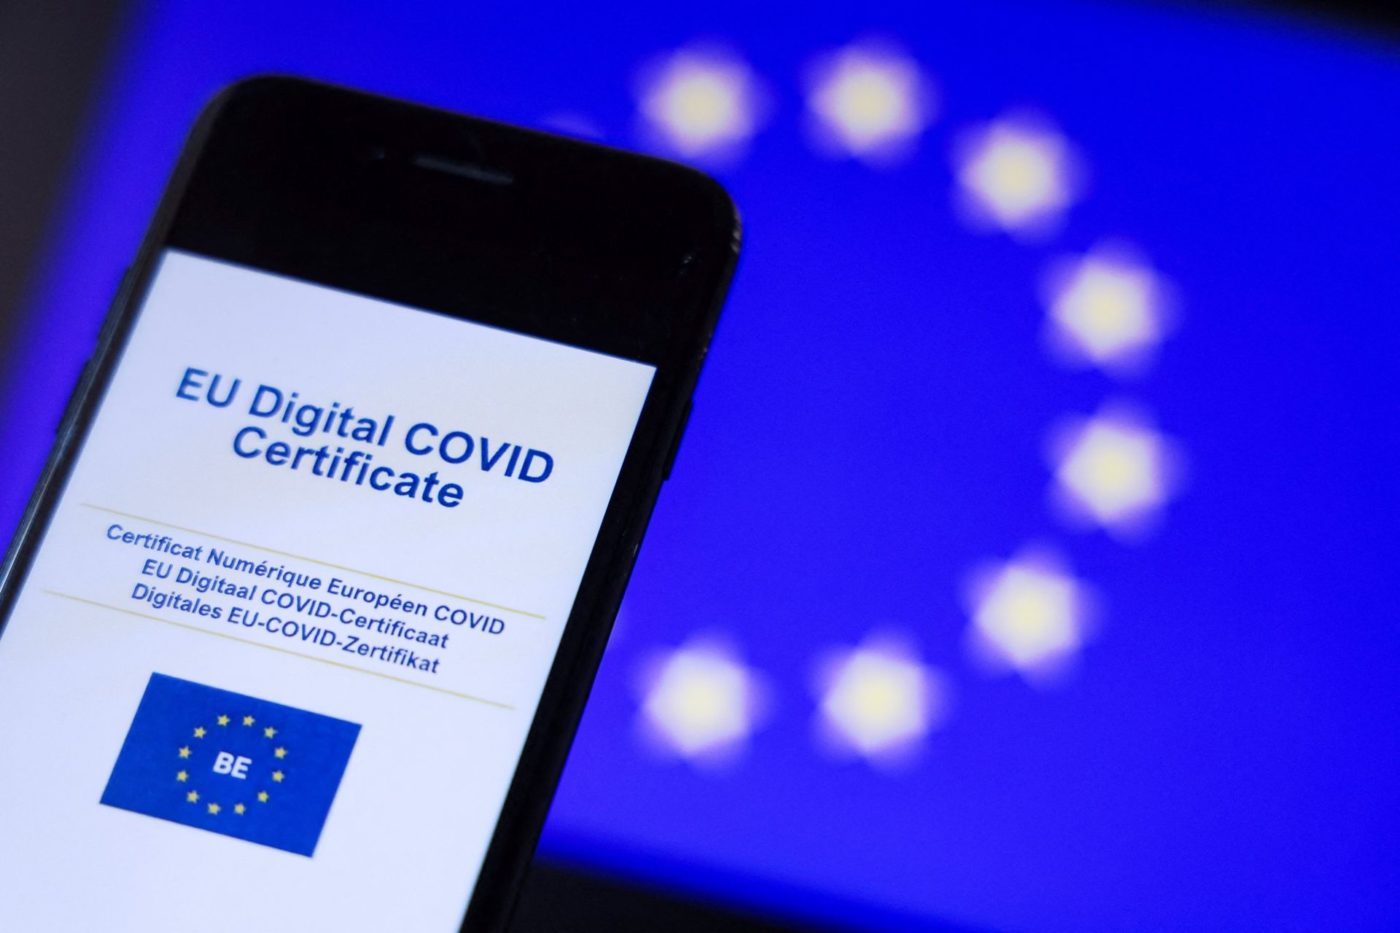 Ένα έτος παράταση στο ψηφιακό πιστοποιητικό COVID της ΕΕ | Τι λέει η  απόφαση της Ευρωπαϊκής Επιτροπής